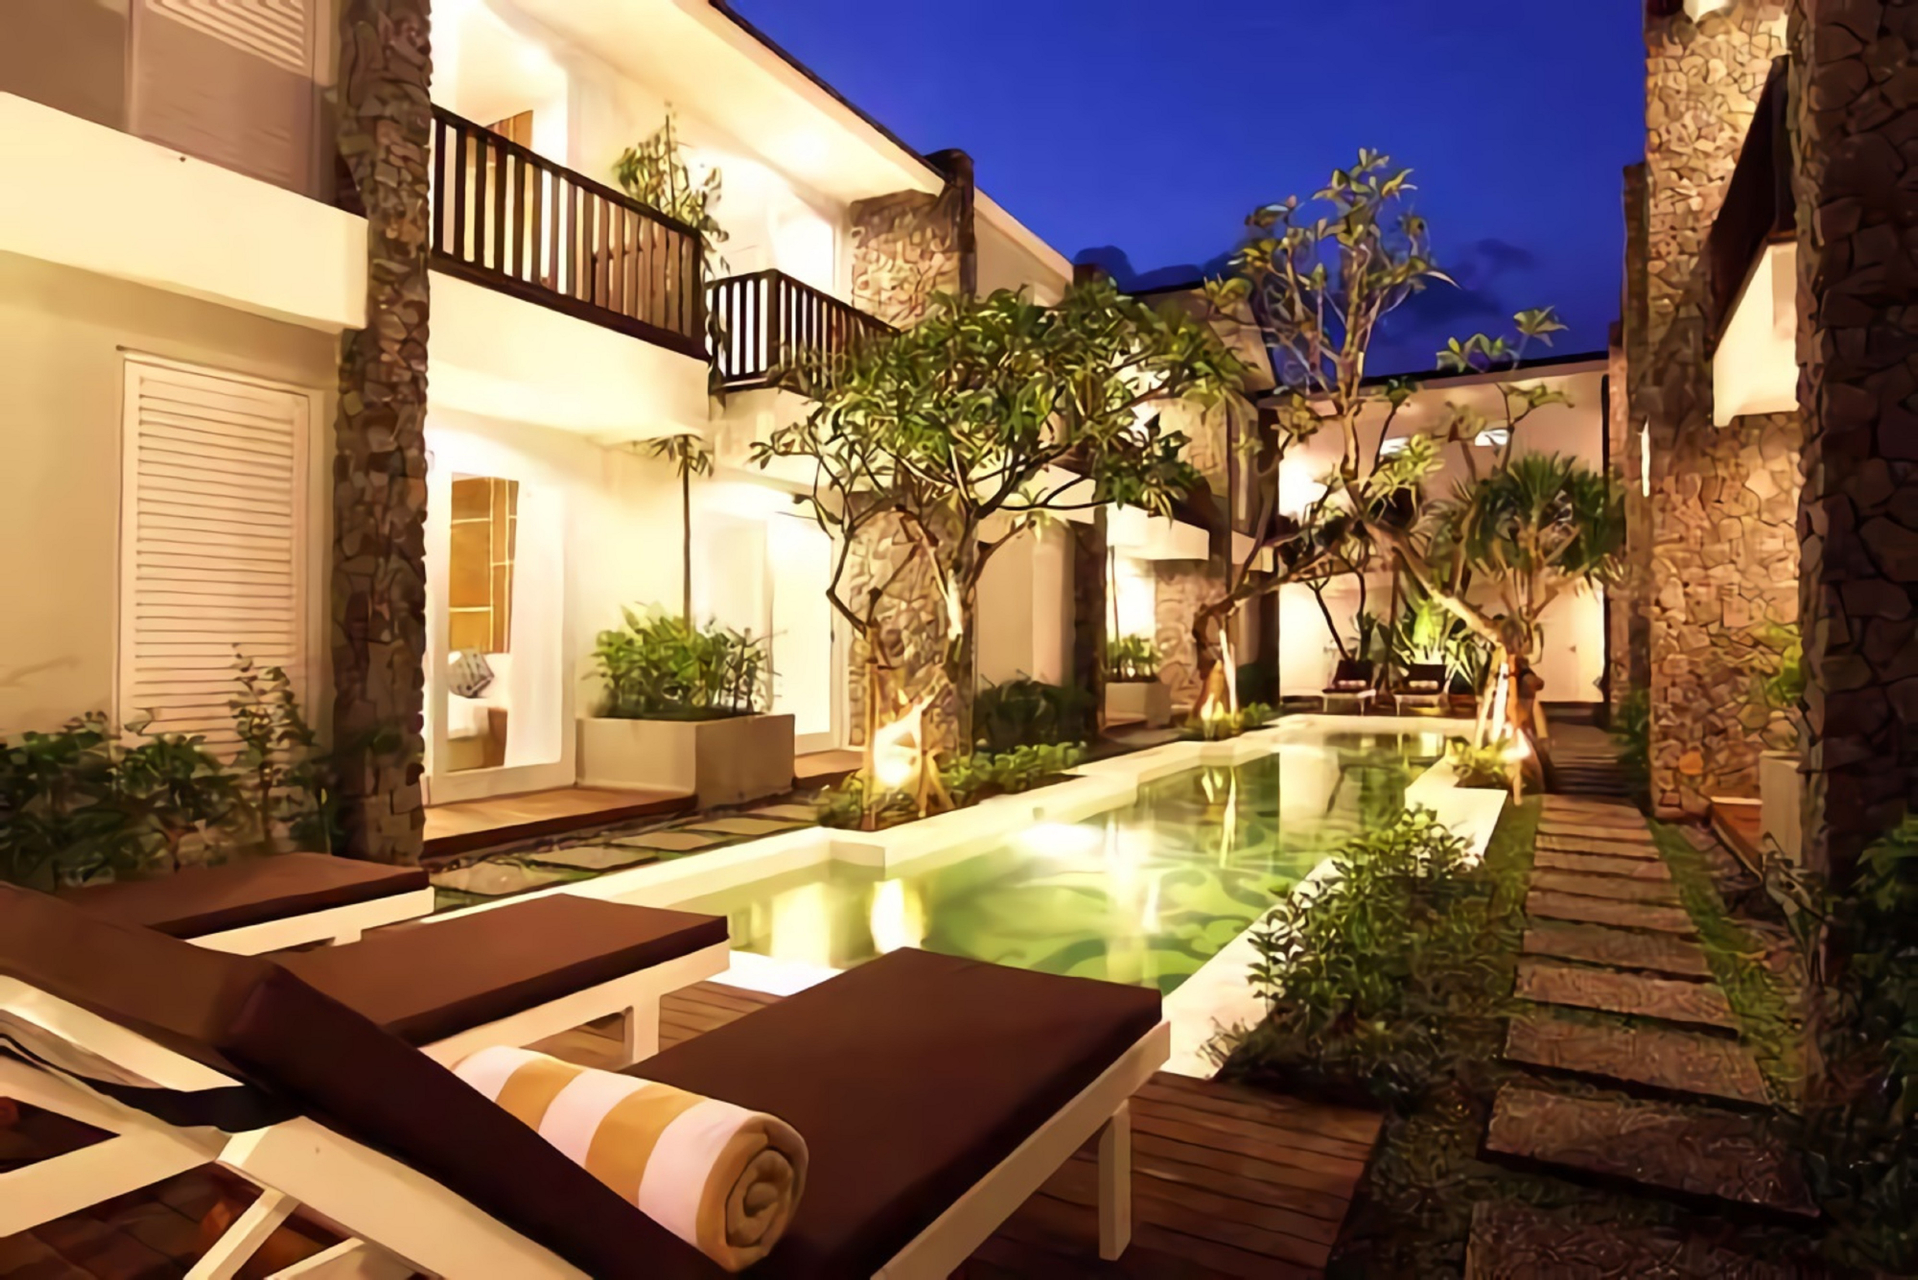 The Kanjeng Suite & Villa Seminyak, Badung